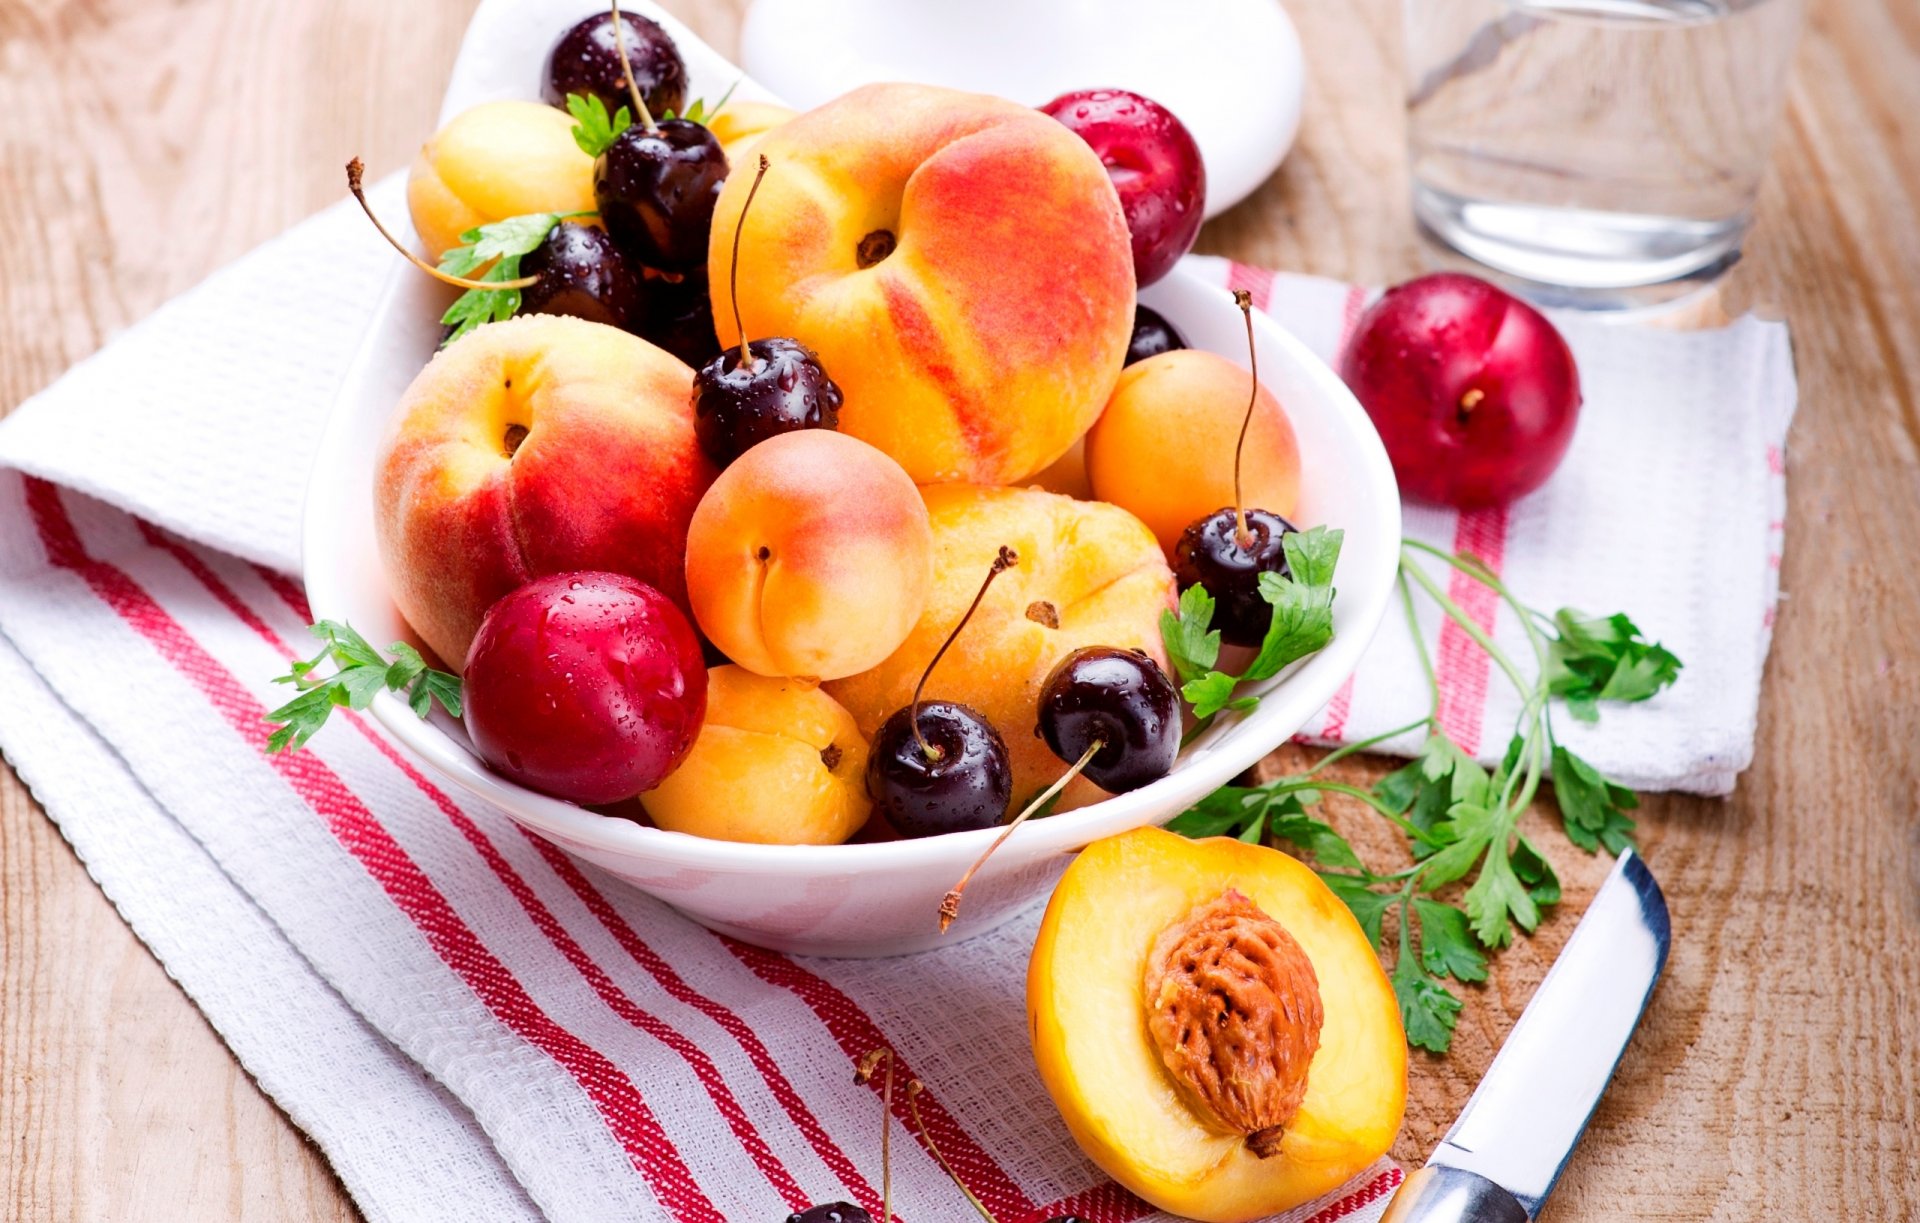 brzoskwinie owoce morele śliwki jagody czereśnie wiśnie lato talerz nóż serwetka